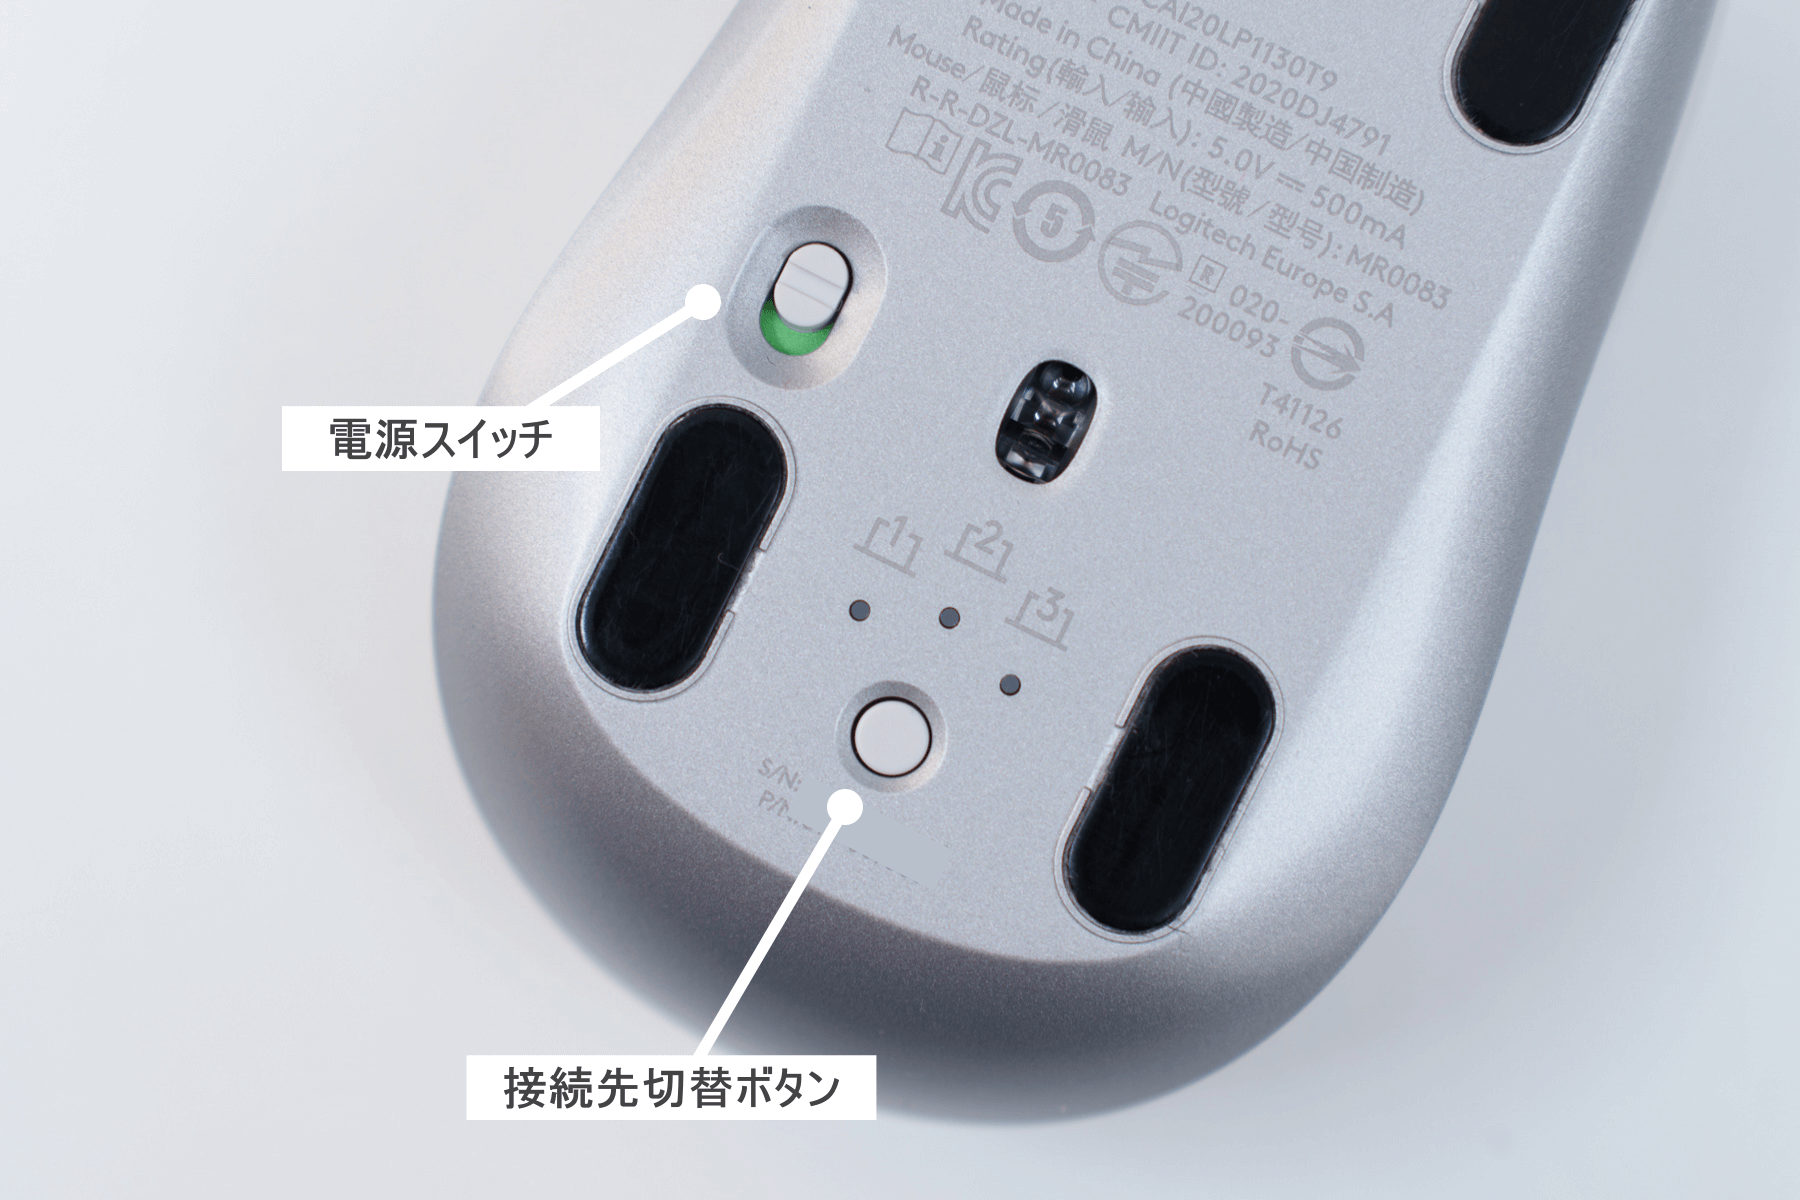 マウス裏面の電源スイッチと接続先切替ボタン